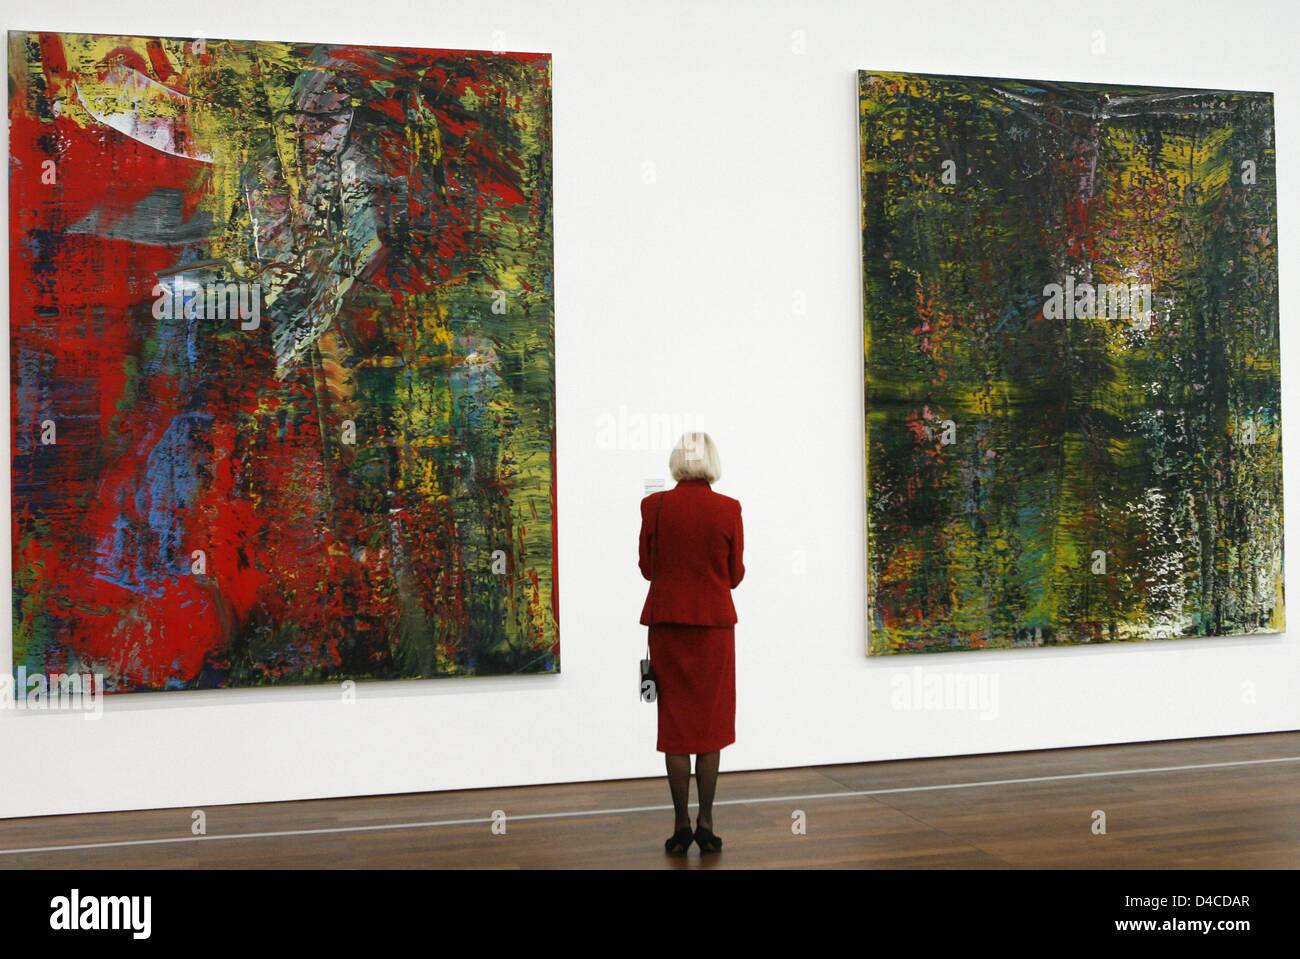 Un visiteur regarde les dernieres oeuvres Abstraktes Bild ', Courbet' ('la peinture abstraite, Courbet') (L) et "chraege' ('Slant" (1988),R) de l'artiste allemand Gerhard Richter au 'Museum' Frieder Burda à Baden-Baden, Allemagne, 18 janvier 2008. Le musée présente plus de 60 œuvres de Gerhard Richter, dont l'artiste a créé entre 1963 et 2007. L'exposition 'Gerhard Richter. Les photos au Banque D'Images